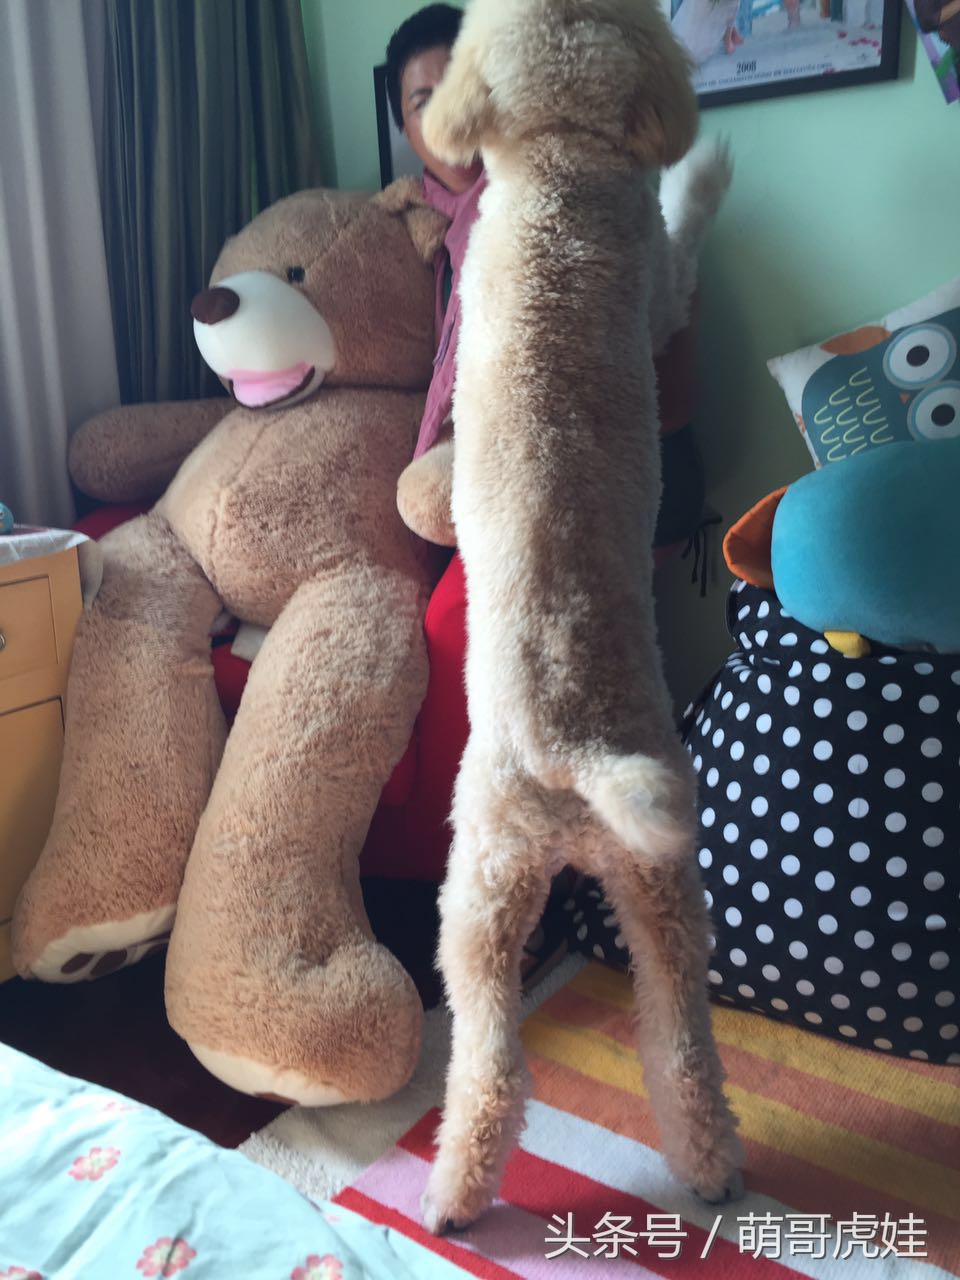 捡屎的买了一只超大熊宝宝，谁知道却被家里的汪星人抢走当玩具